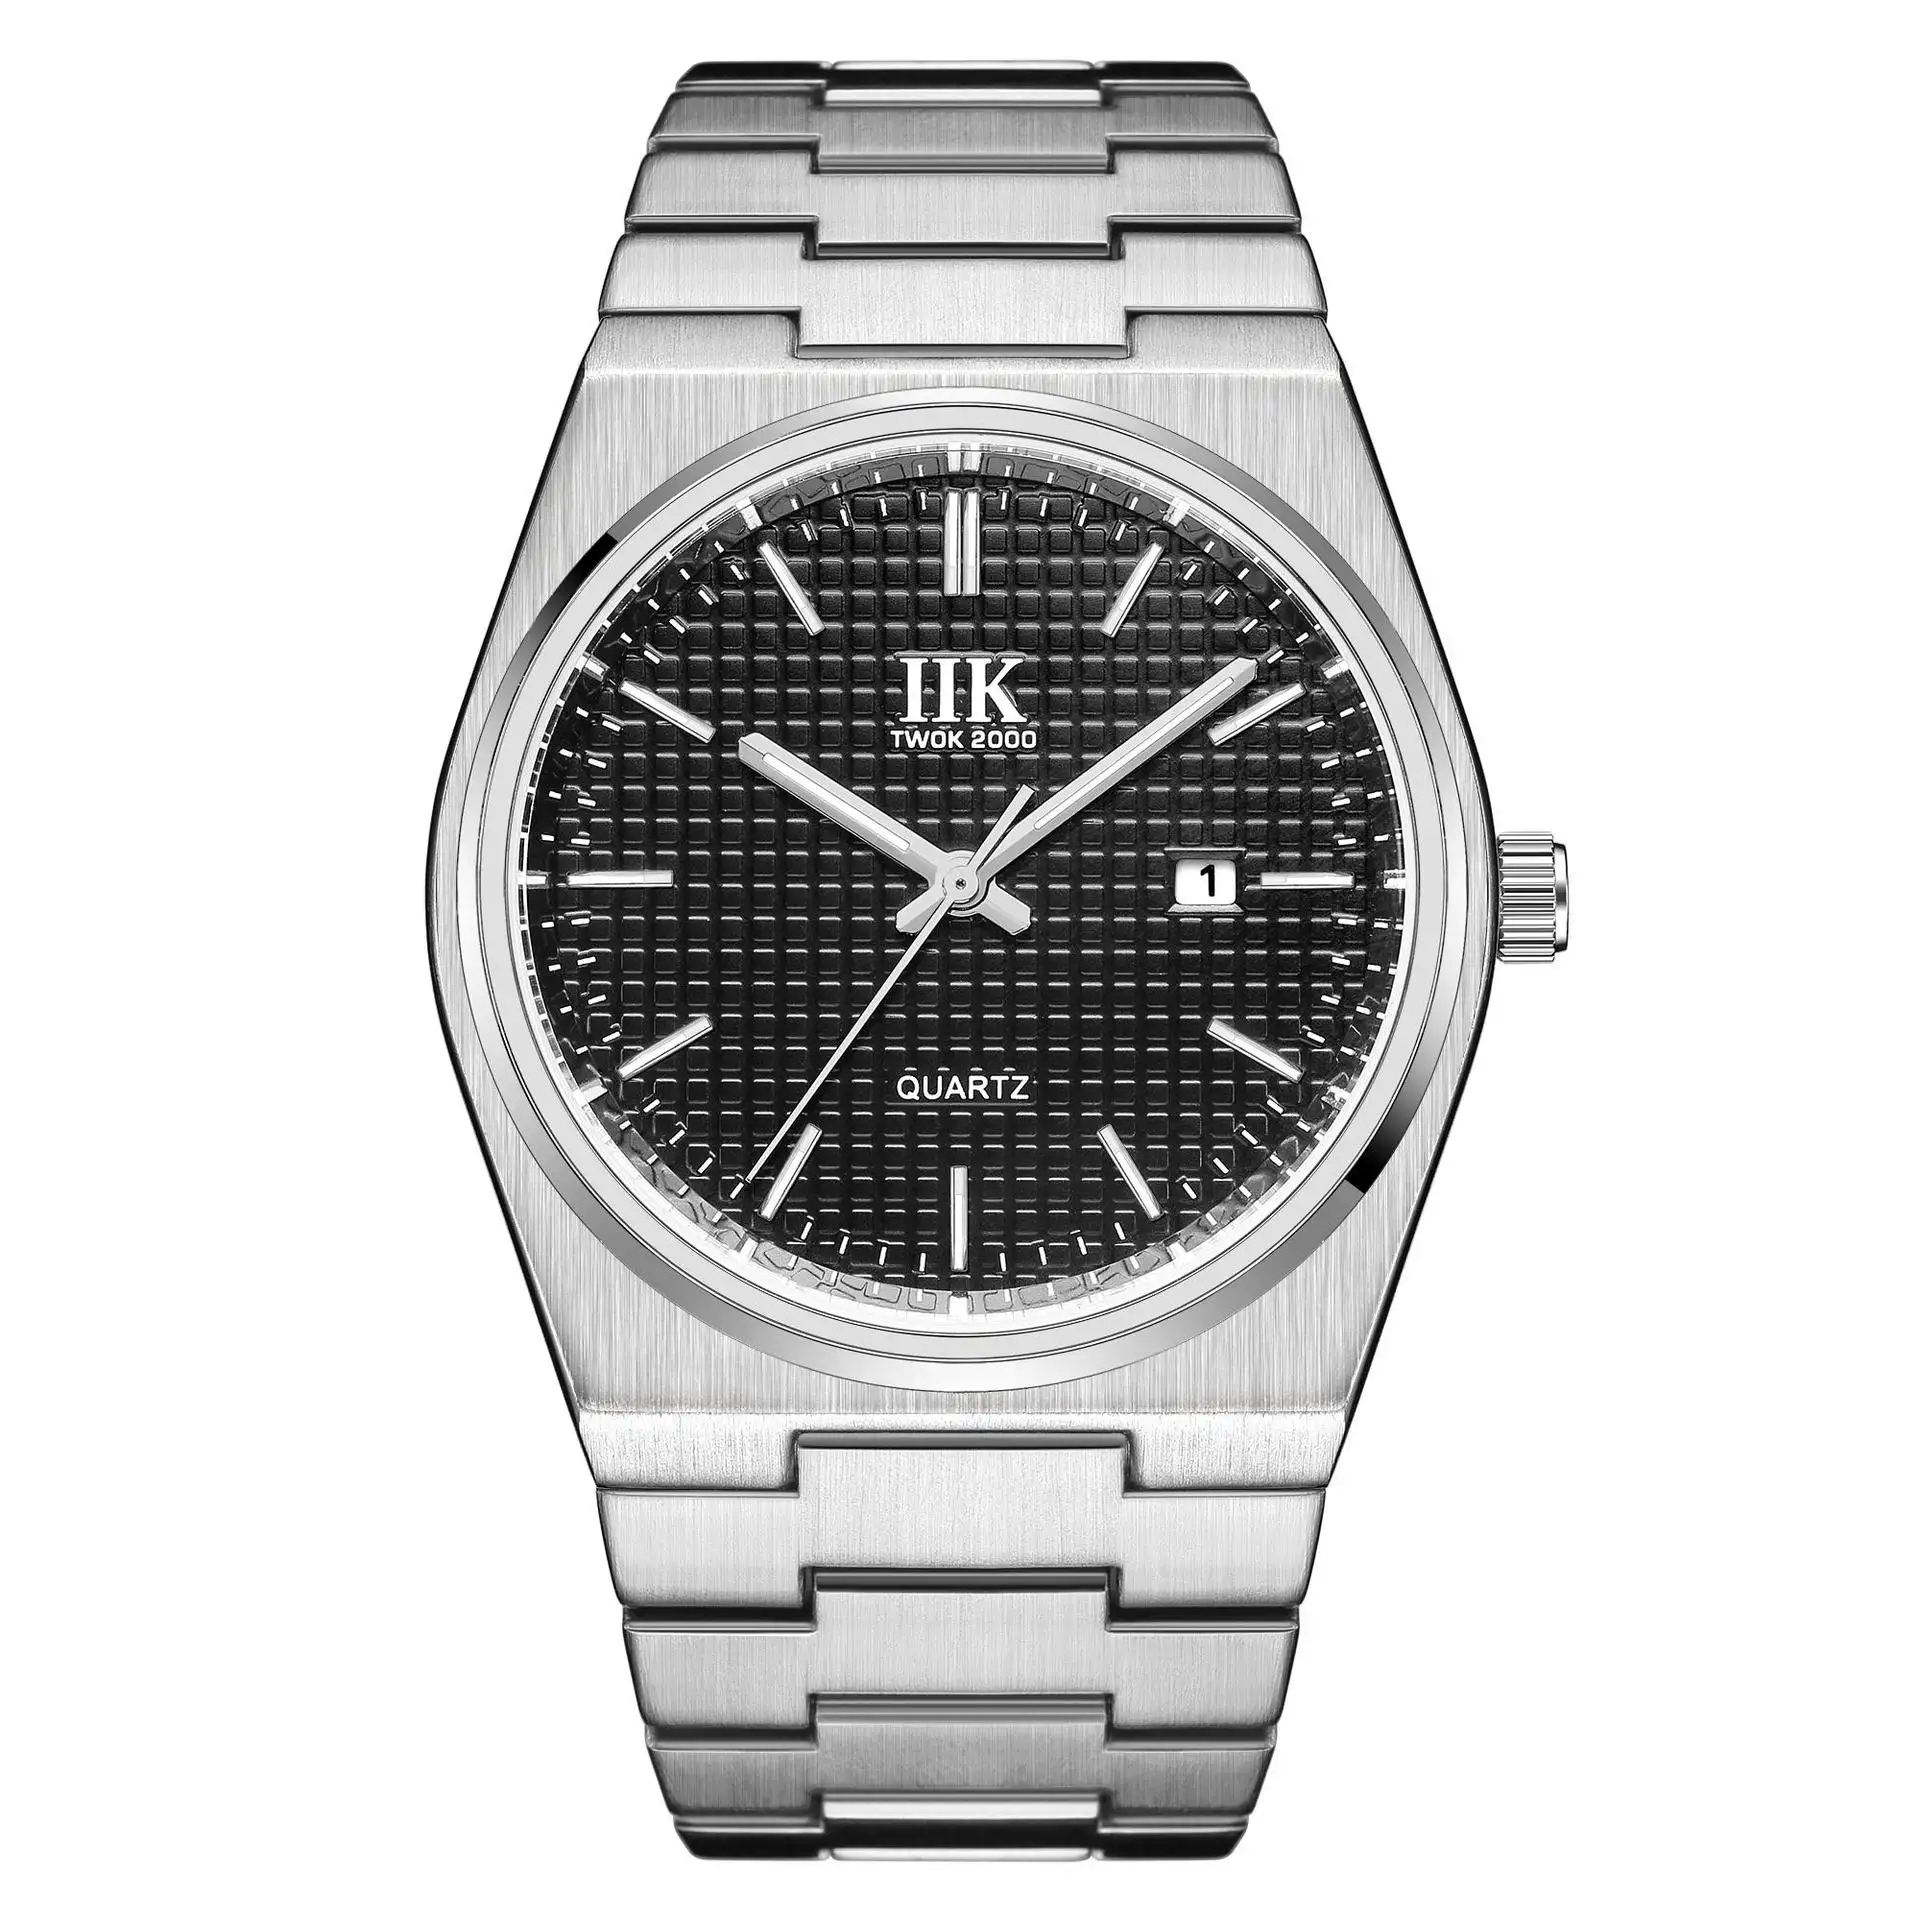 Özel ucuz özel etiket paslanmaz çelik kesin zaman Elegance erkekler için kuvars saatler yüksek kaliteli iş kol saati